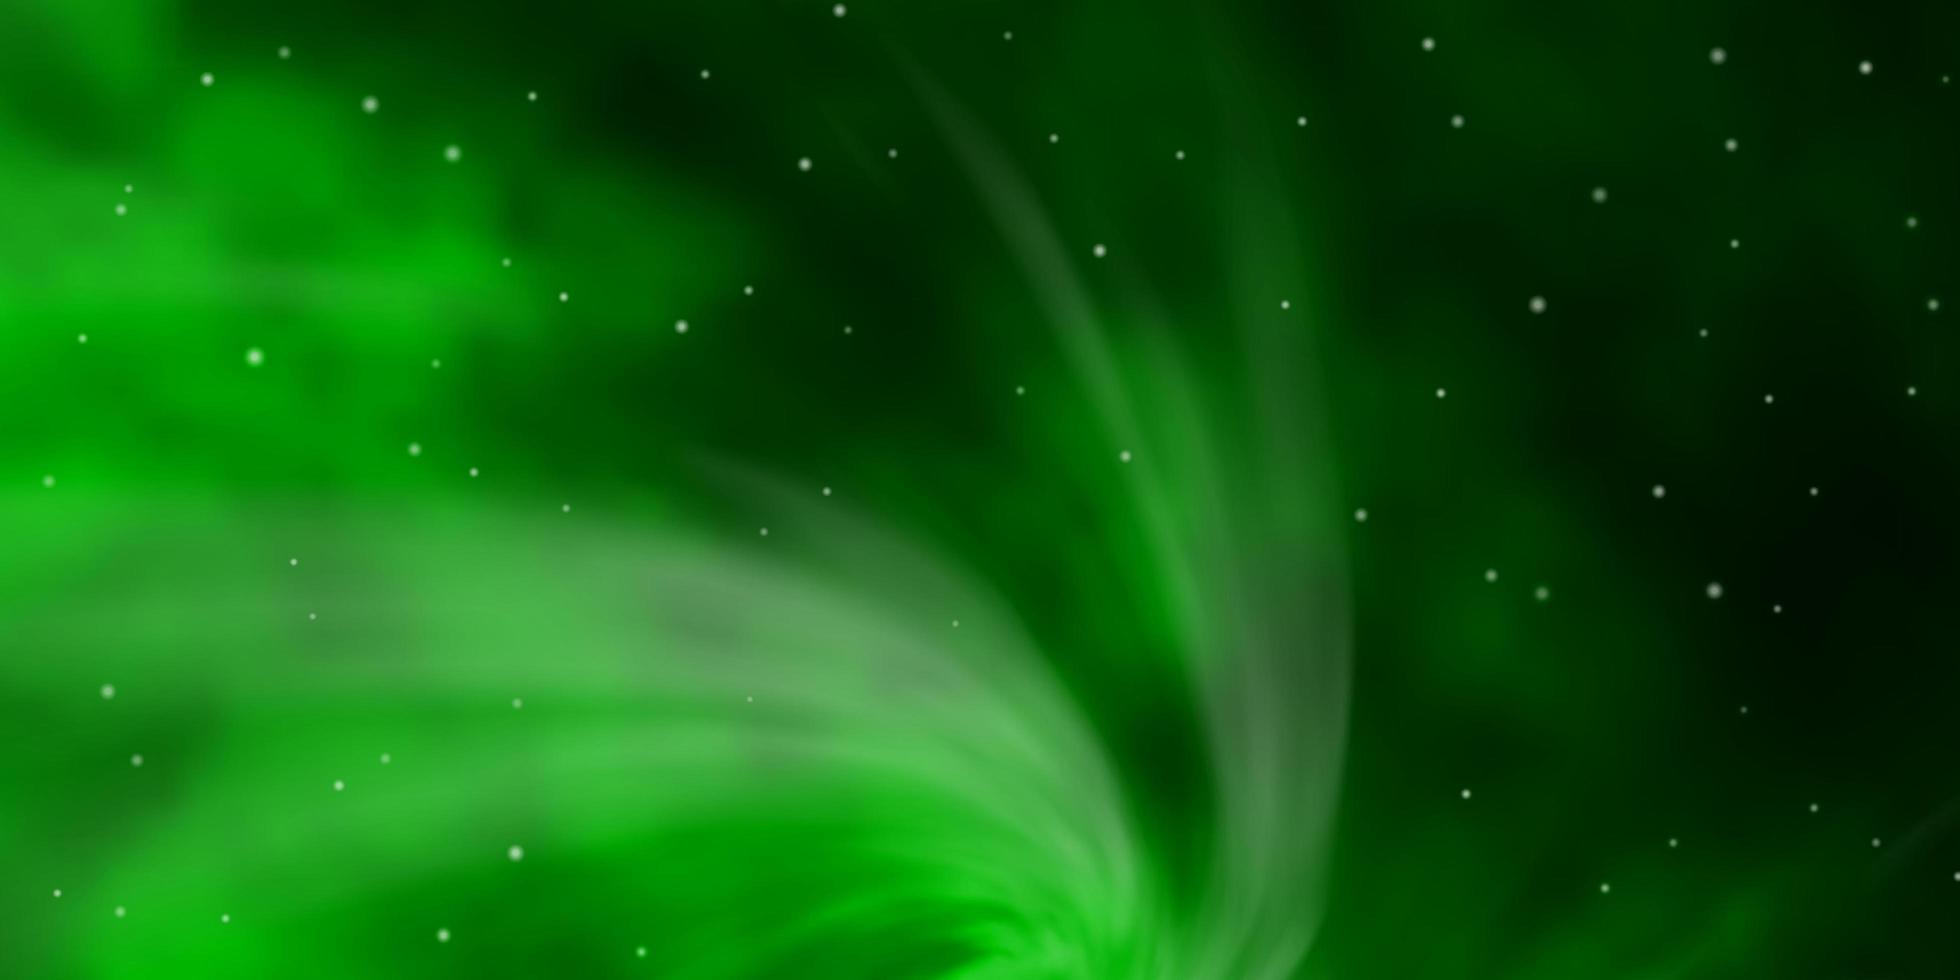 ljusgrönt vektormönster med abstrakta stjärnor. vektor